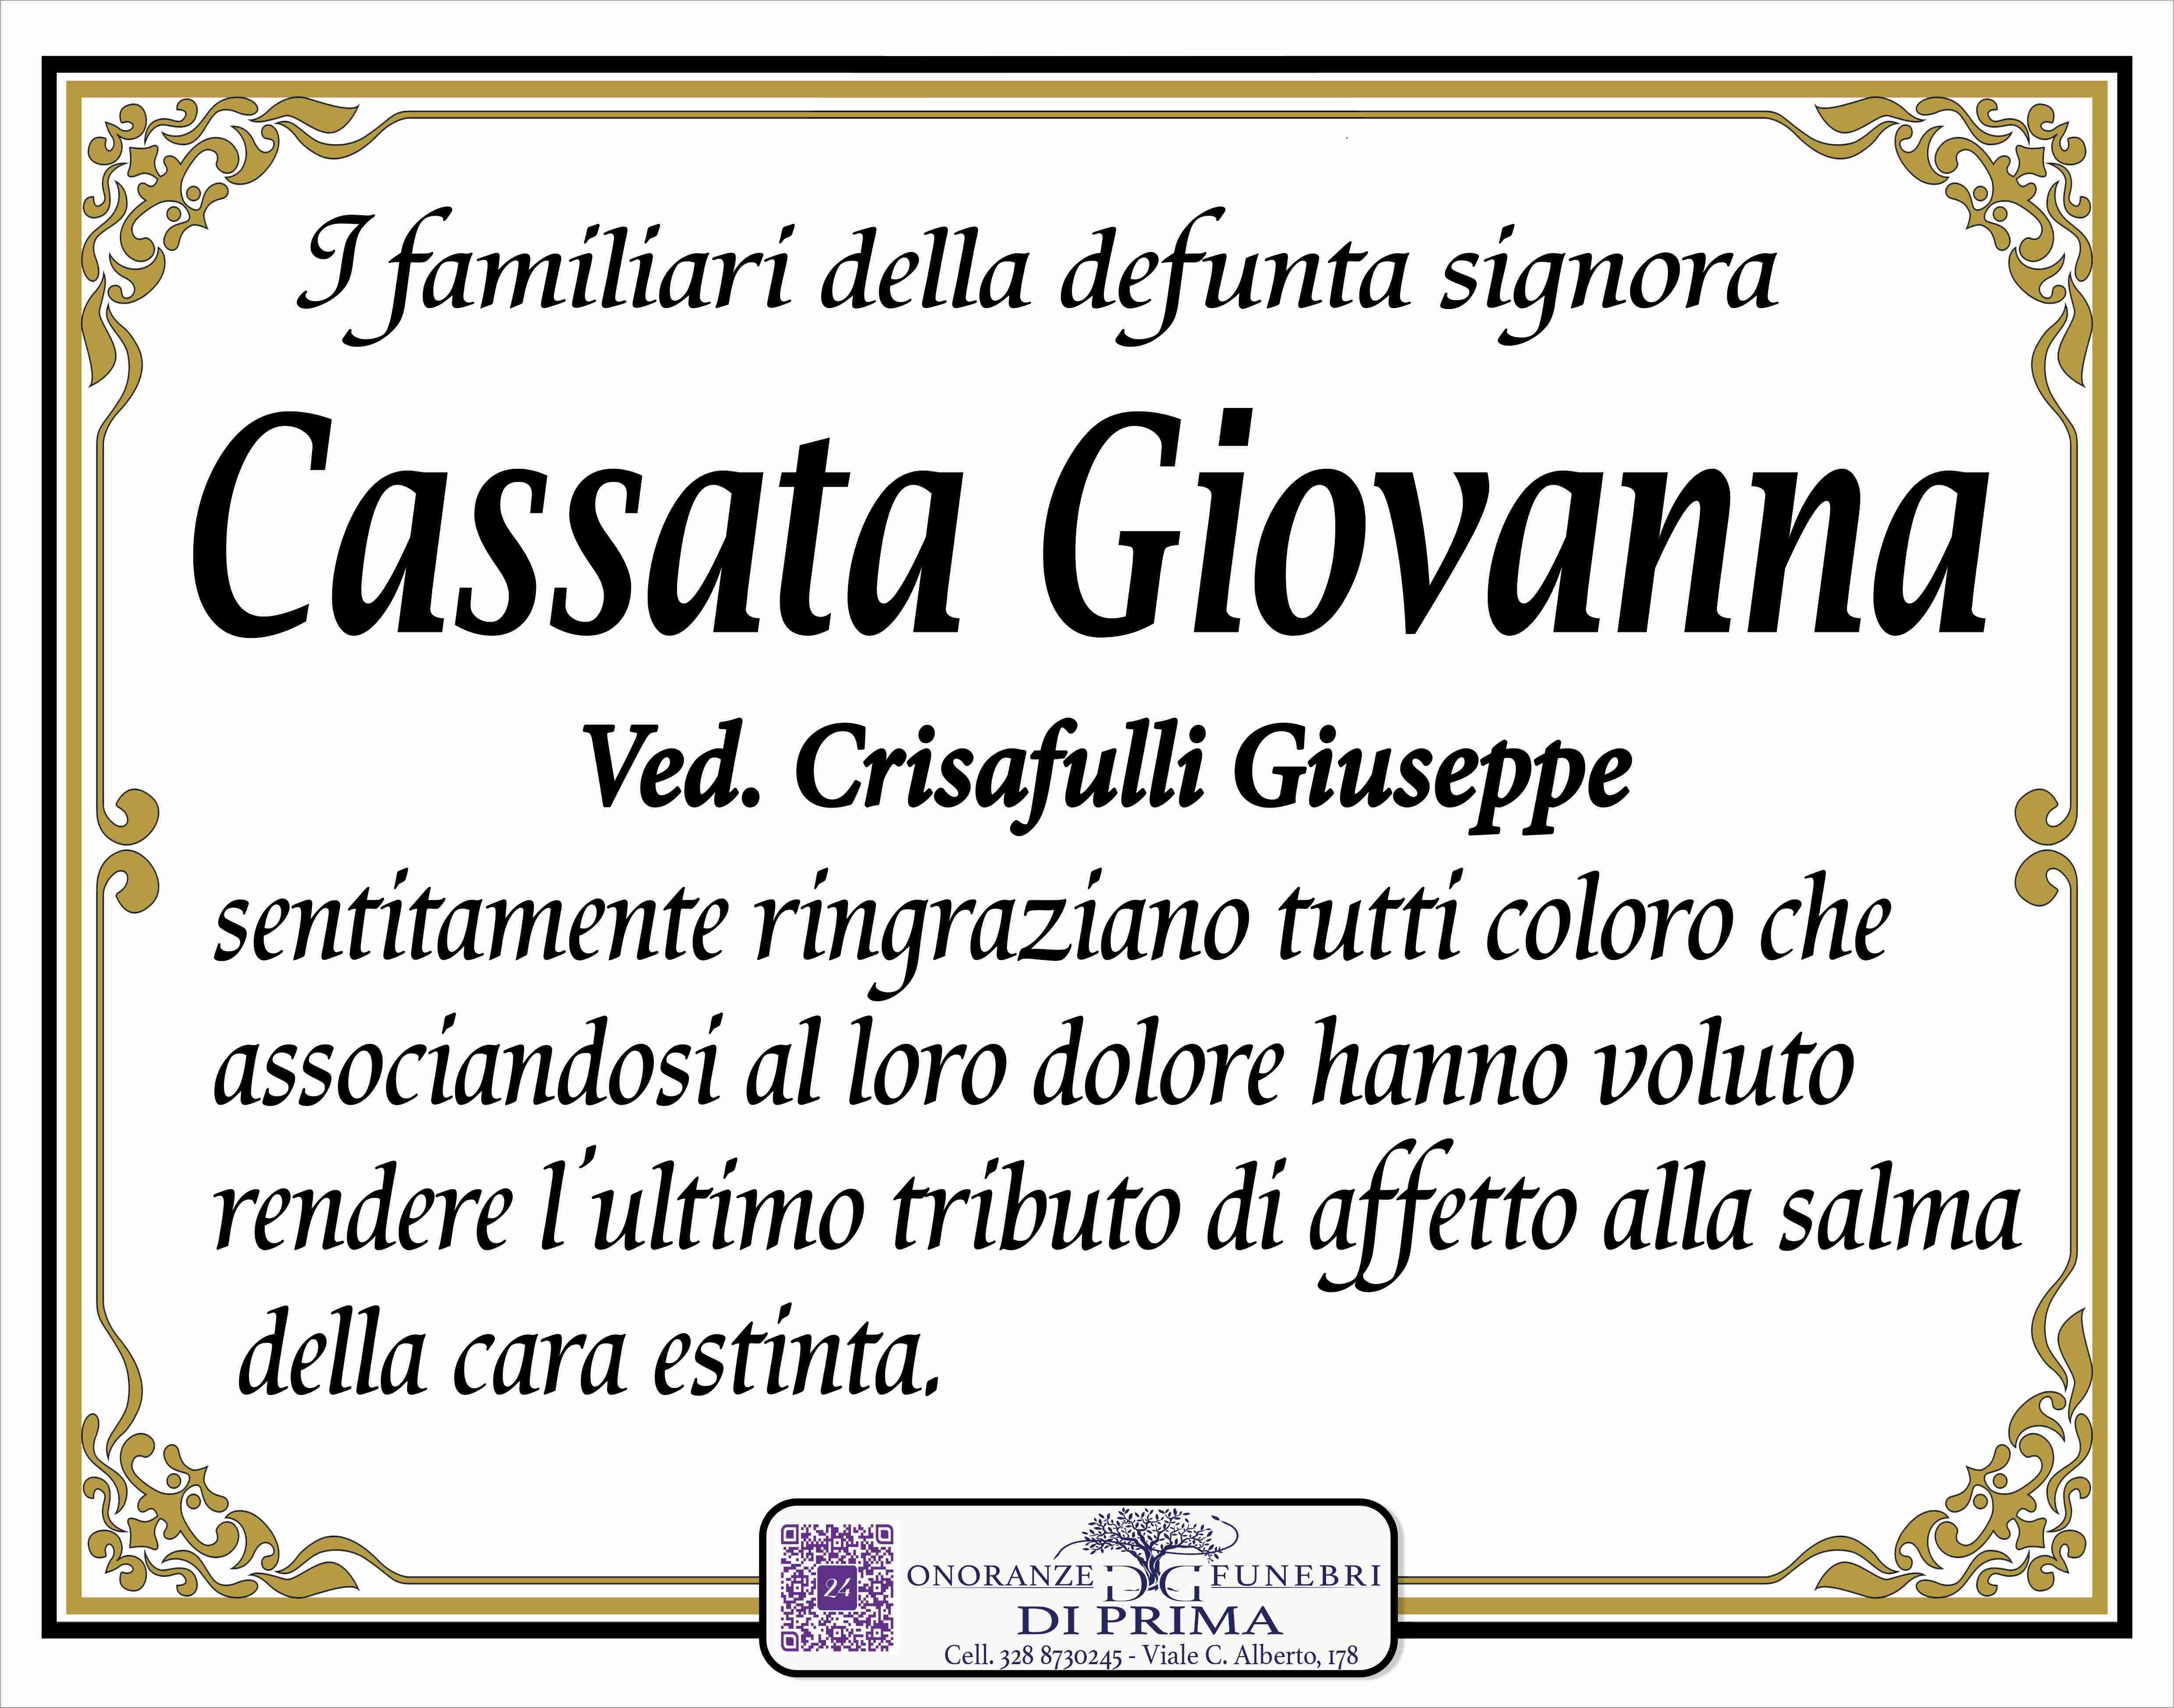 Giovanna Cassata Insegnante